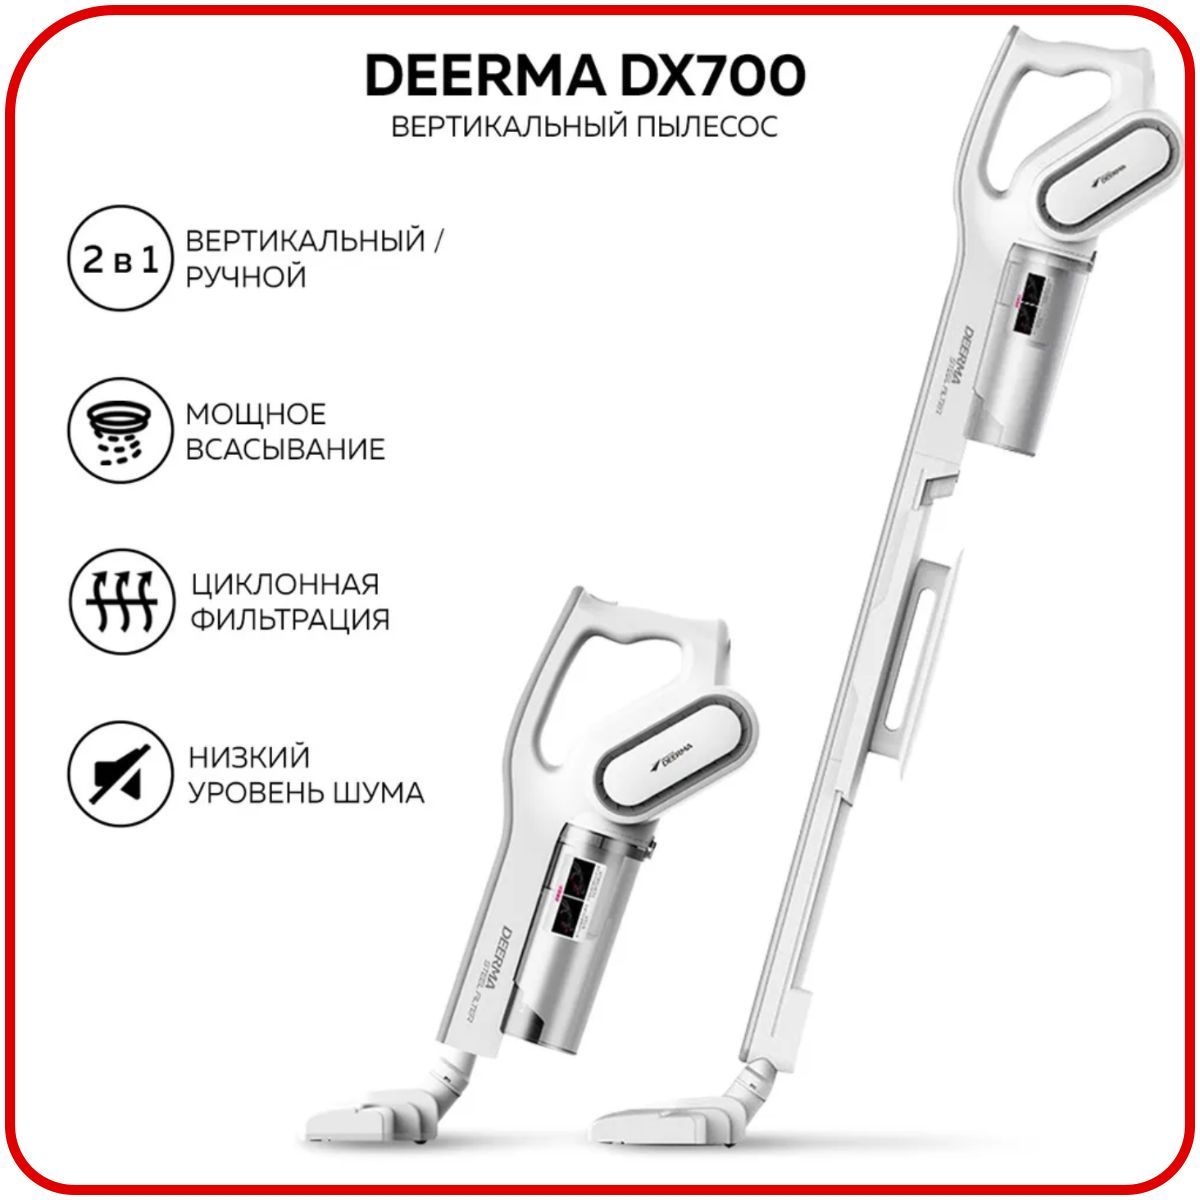 Вертикальный пылесос dx. Пылесос Deerma dx700s. Ручной пылесос Xiaomi Deerma dx700s. Пылесос вертикальный Xiaomi Deerma dx700s. Вертикальный пылесос Xiaomi Deerma Vacuum Cleaner (dx700s).